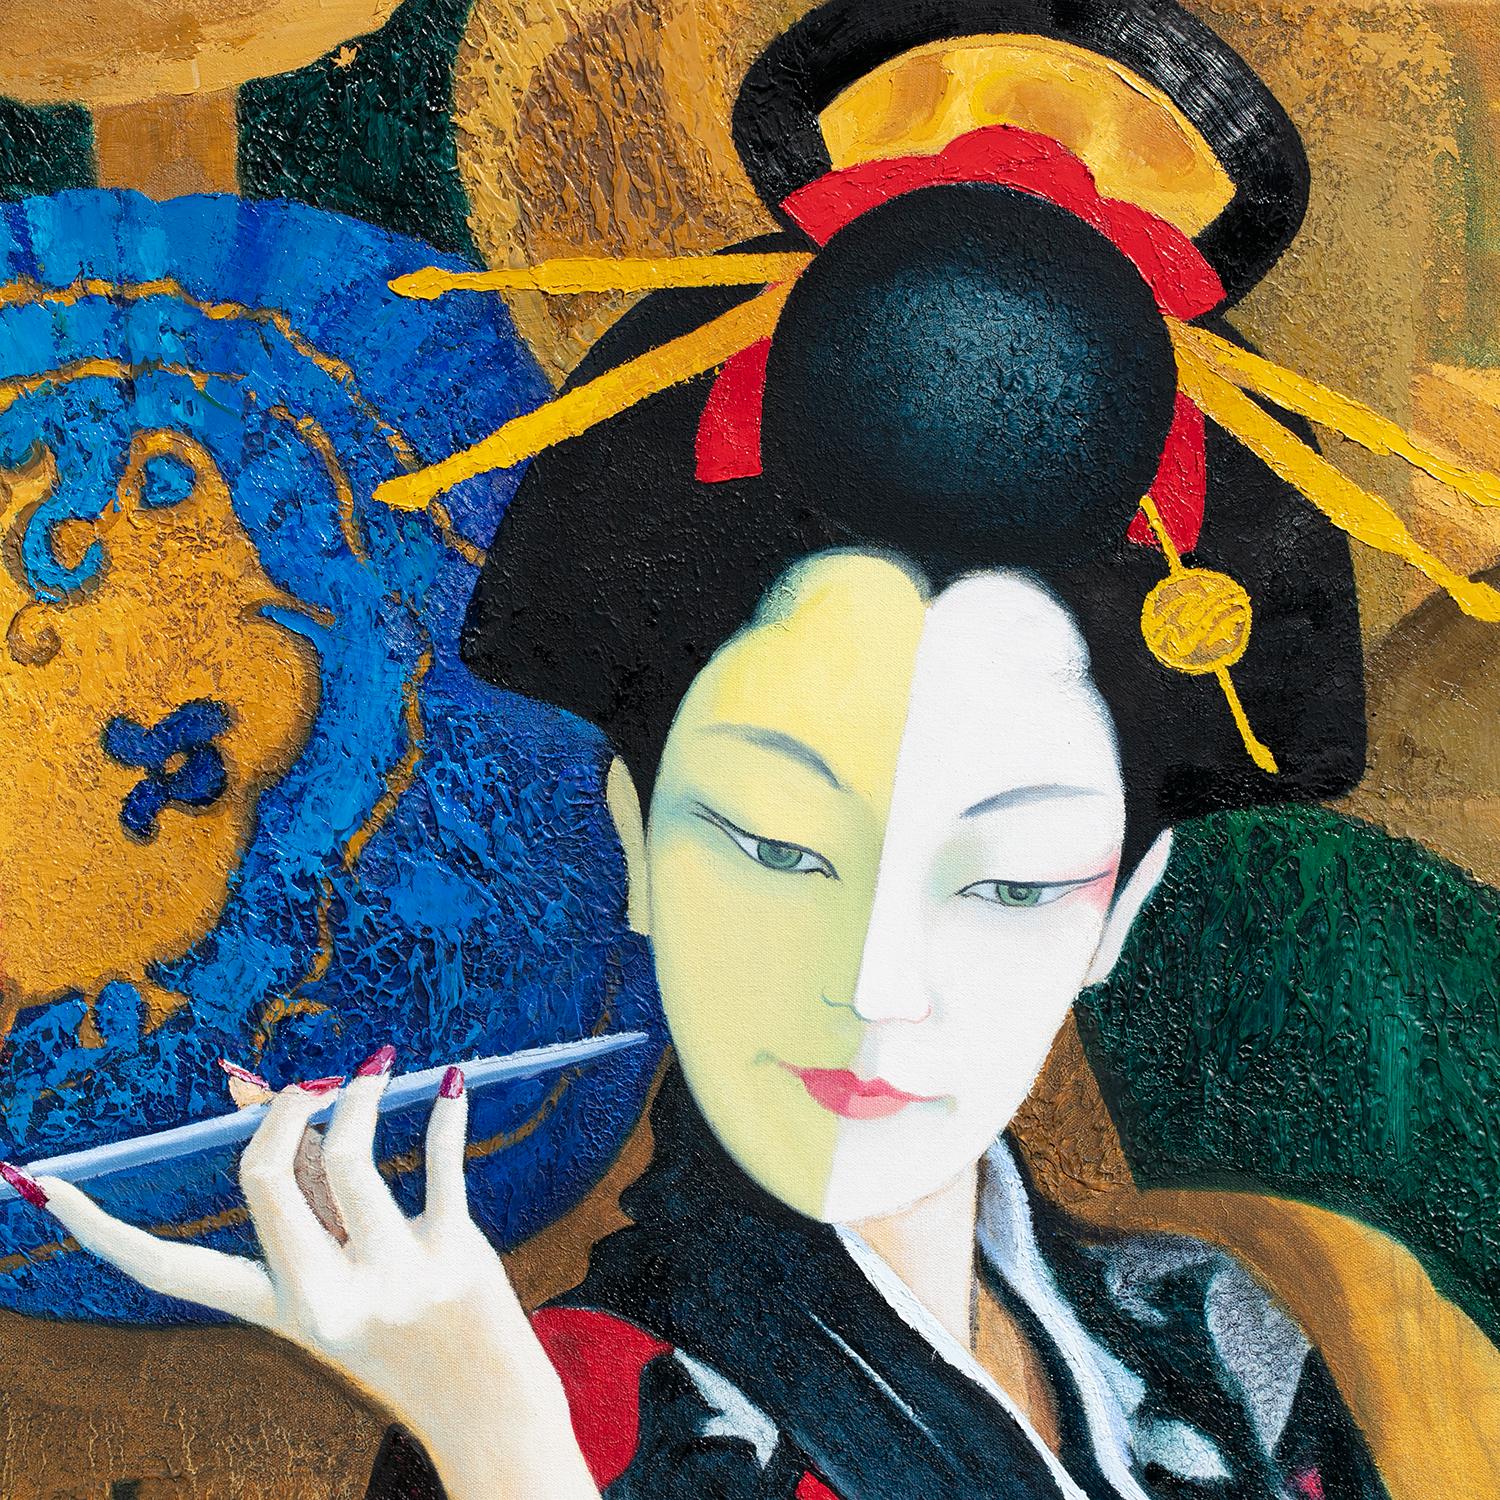 <p>Commentaires de l'artiste<br>L'artiste Stanislav Sidorov illustre une belle femme japonaise en kimono. Elle tient délicatement une fine pipe à tabac kiseru d'une main manucurée. Stanislav consacre la pièce à la culture japonaise, capturant la